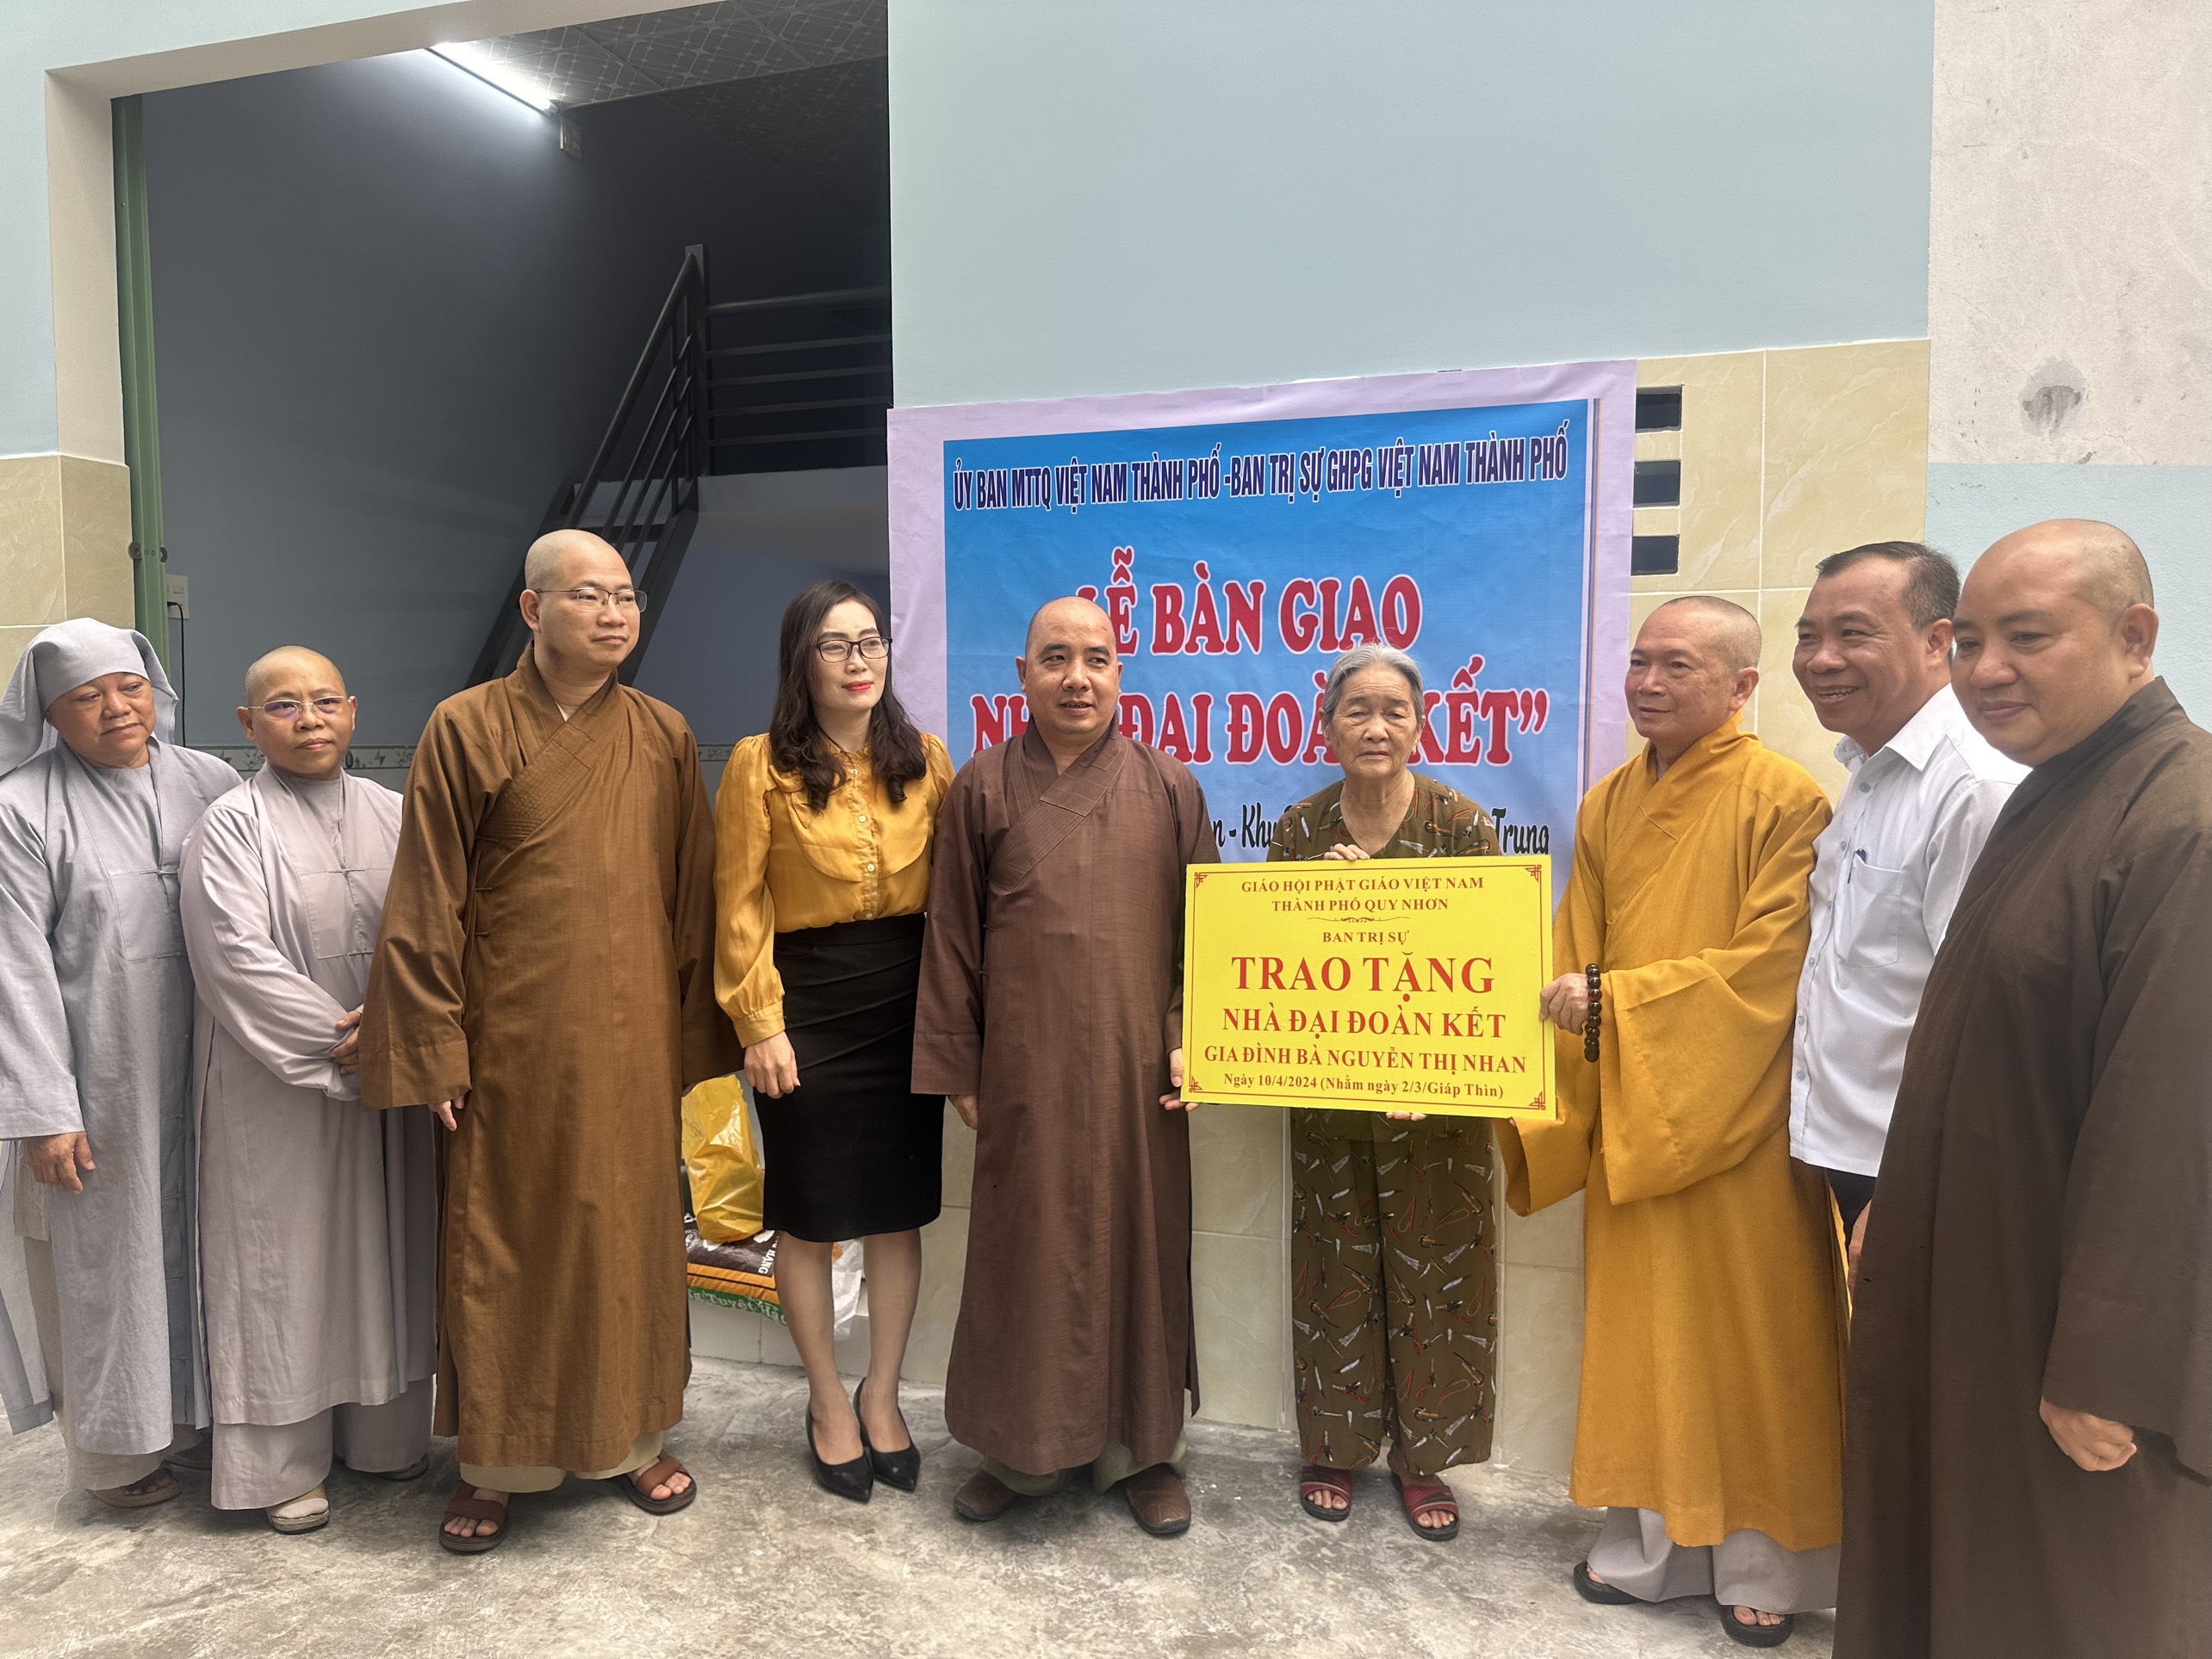 Phật giáo thành phố Quy Nhơn trao nhà Đại đoàn kết